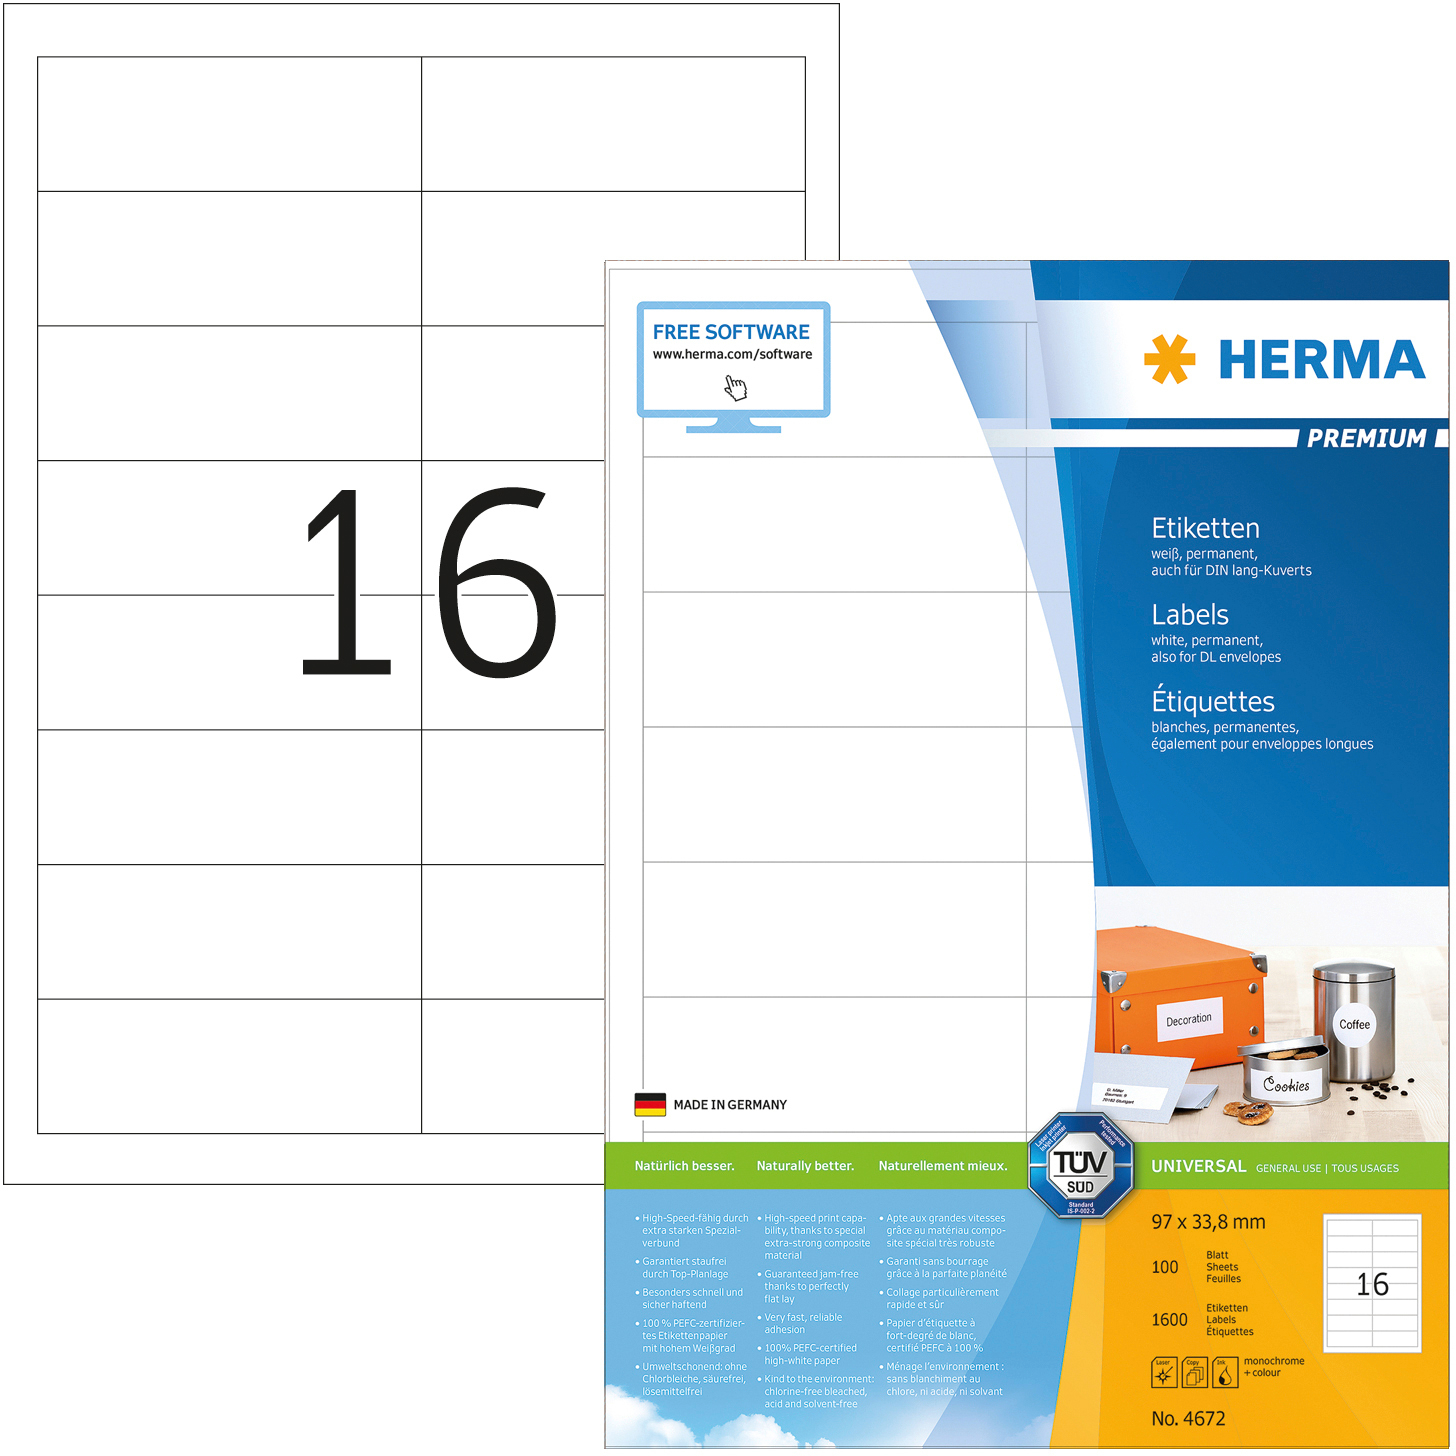 HERMA Etiquettes Premium 96,5×33,8mm 4672 blanc 1600 pcs.